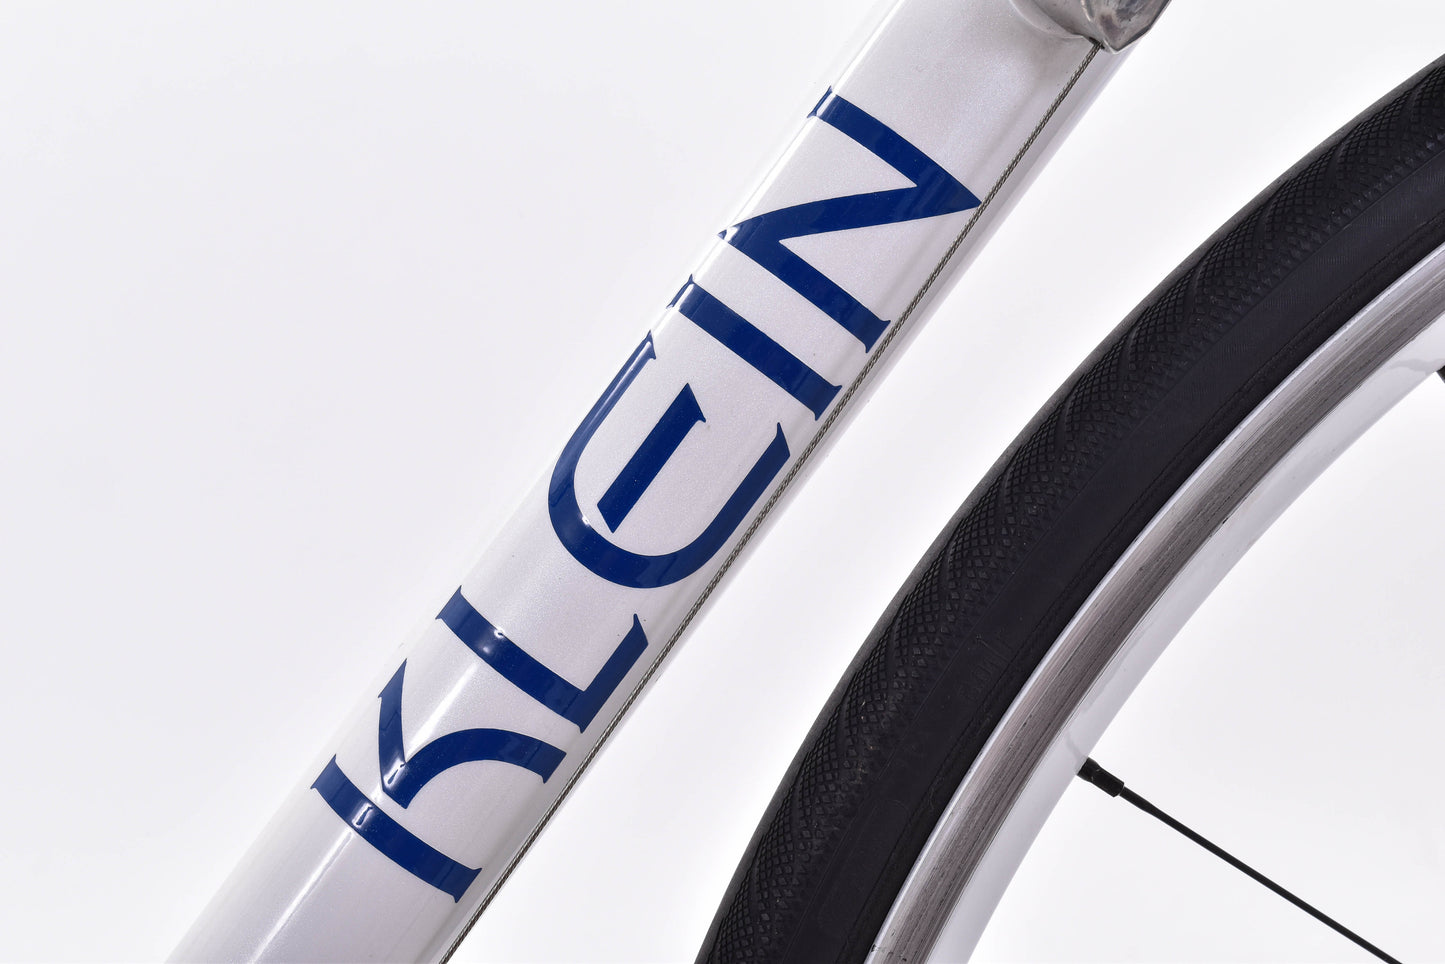 USED Klein Quantum Aluminum Road Bike 54cm Shimano Ultegra 2x10 speed White